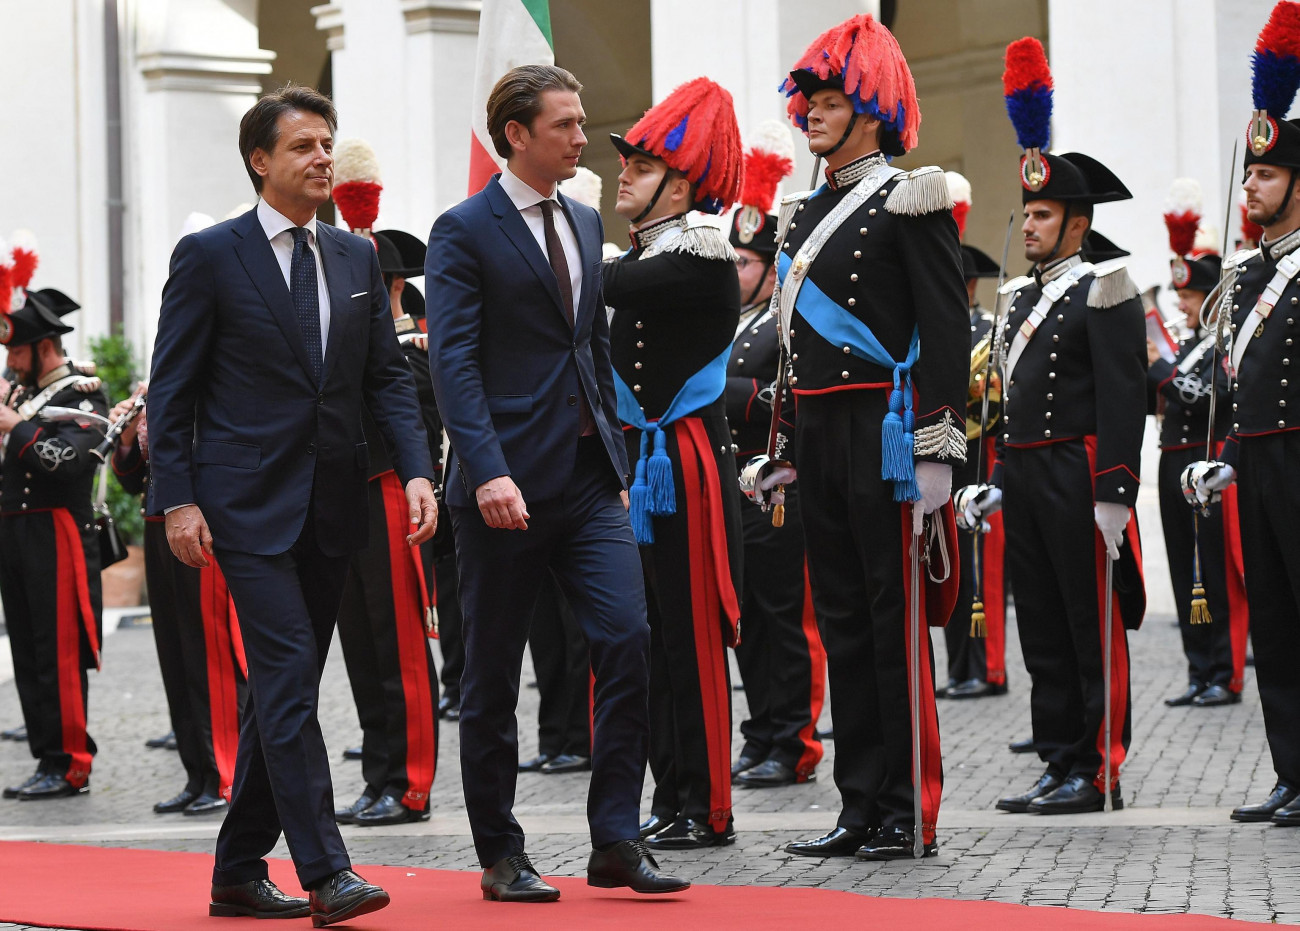 Róma, 2018. szeptember 18.
Giuseppe Conte olasz miniszterelnök (b) fogadja Sebastian Kurz osztrák kancellárt a római kormányfői rezidencia, a Chigi-palota előtt 2018. szeptember 18-án. (MTI/EPA/Ettore Ferrari)